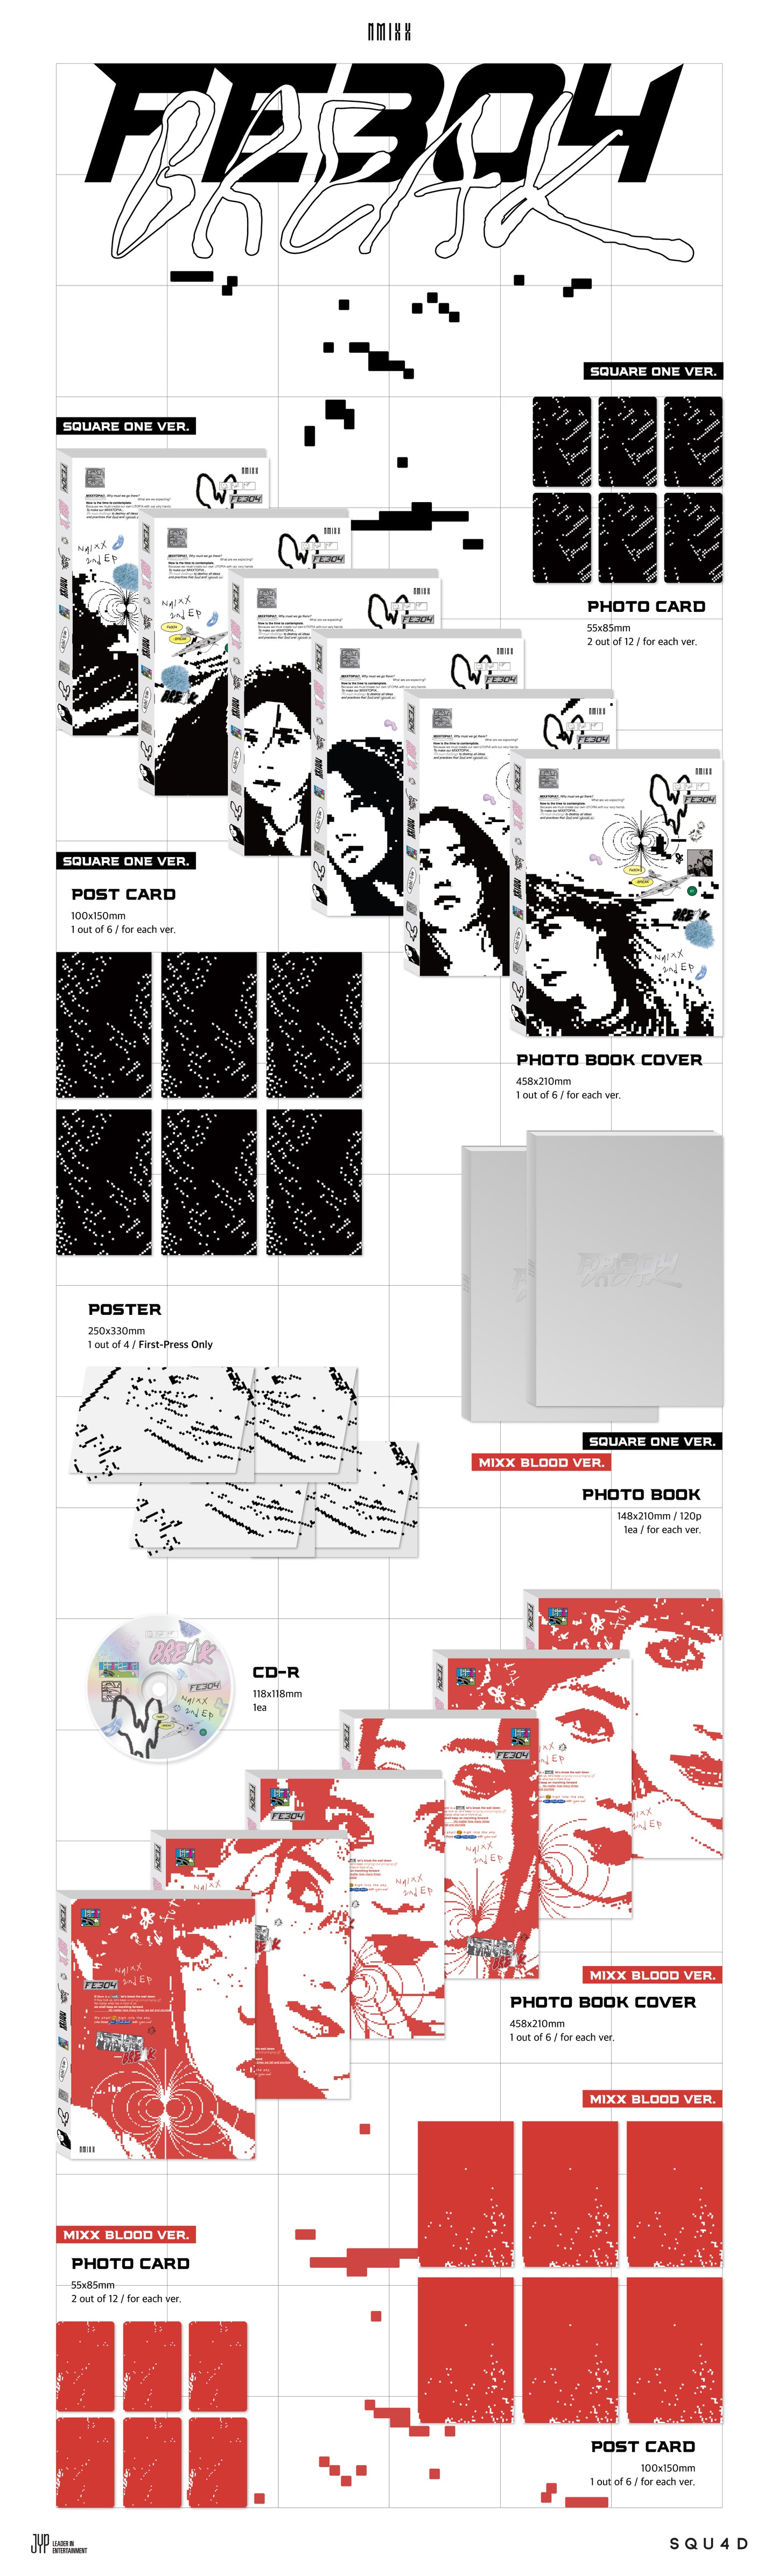 K-Pop CD Nmixx - 2nd EP Album 'Fe304: Break'